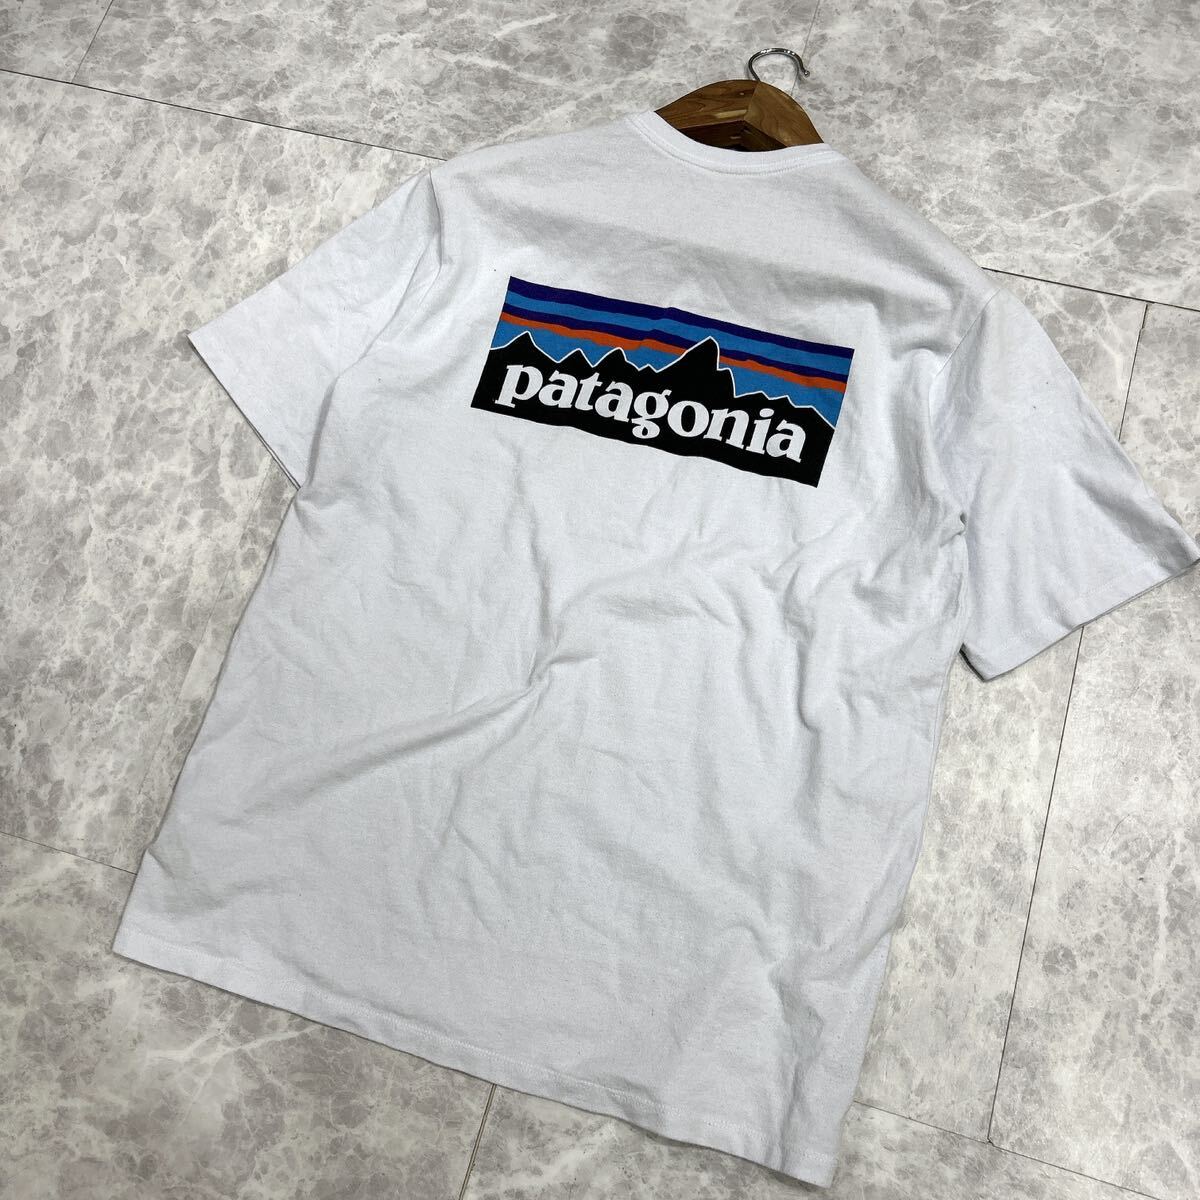 DD ■ メキシコ製 '人気モデル' Patagonia パタゴニア 半袖 ロゴ入り Tシャツ / カットソー sizeM 着心地抜群 メンズ 紳士服 トップス の画像1